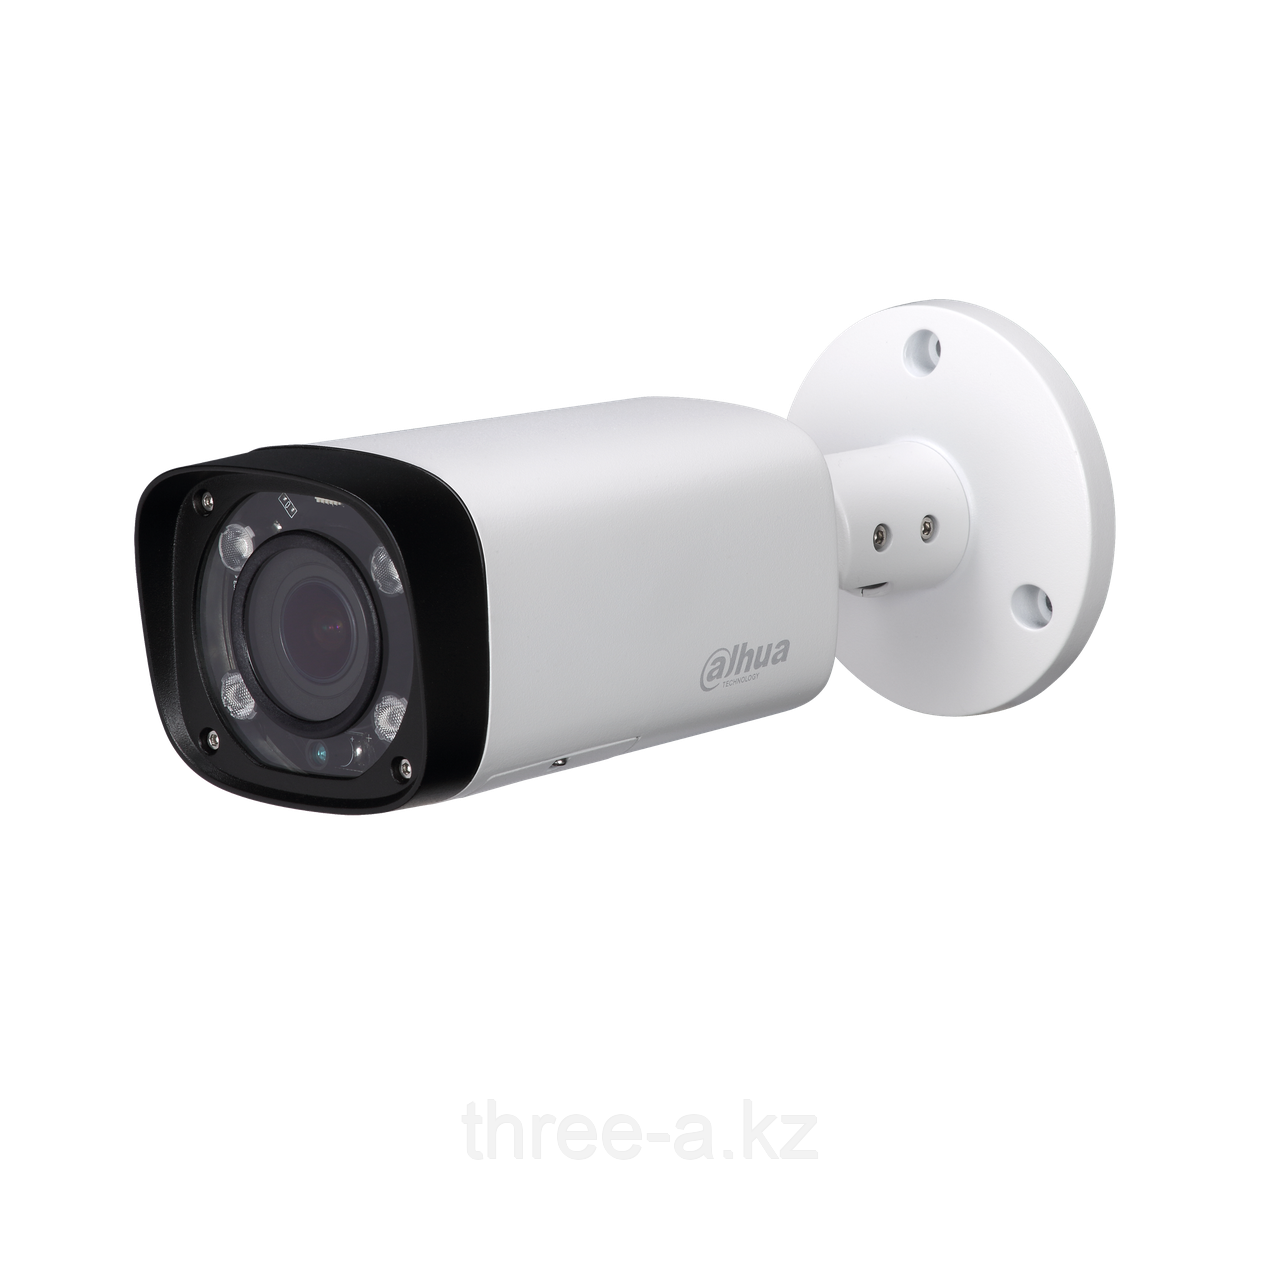 Цилиндрическая камера видеонаблюдения HAC-HFW1220RP-VF-27135